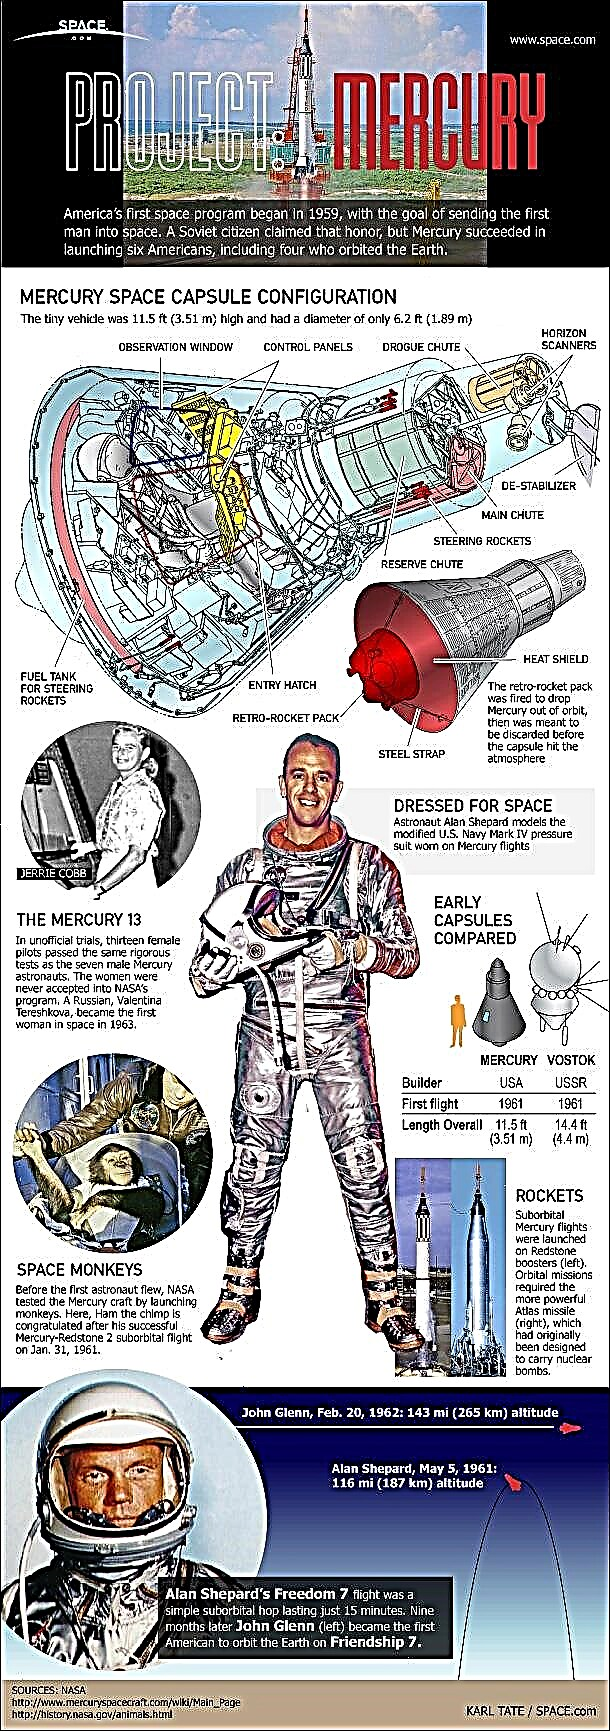 Projekt Mercury: Amerikas erstes bemanntes Weltraumprogramm